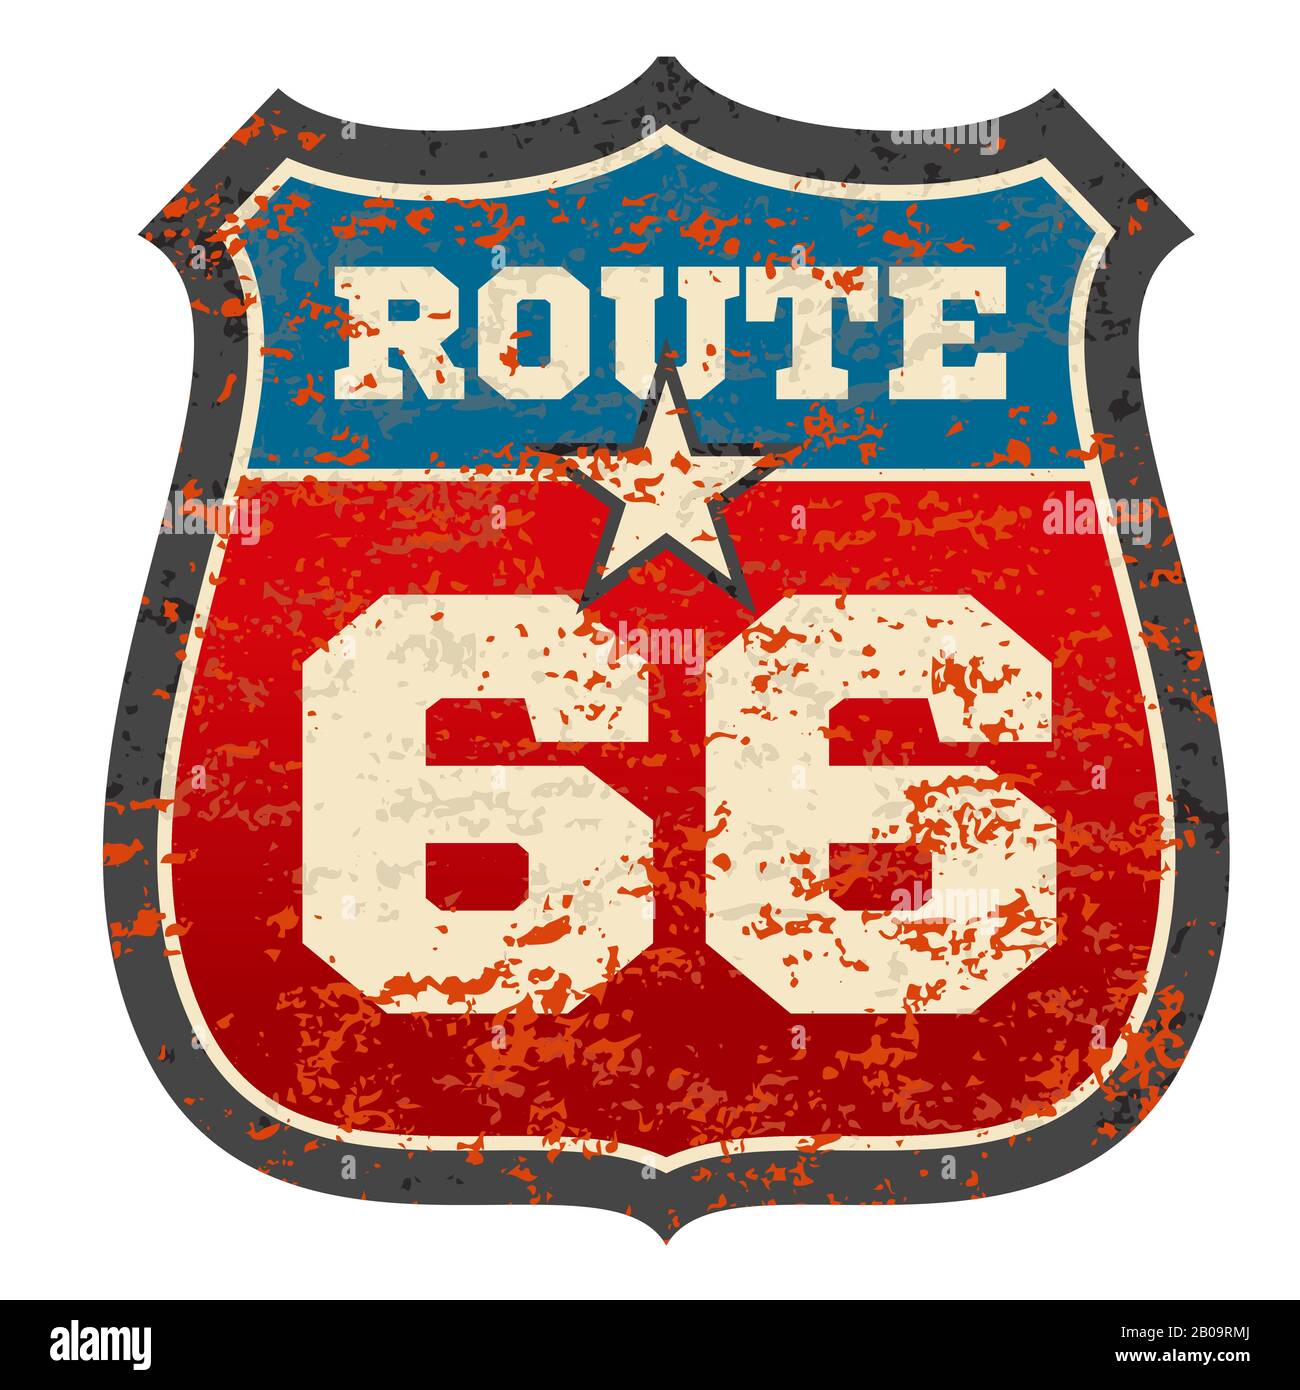 Vintage route 66 panneau de route avec grunge vieilli rouillé texture vecteur illustration. Panneau de signalisation route 66, panneau de route de voyage Illustration de Vecteur